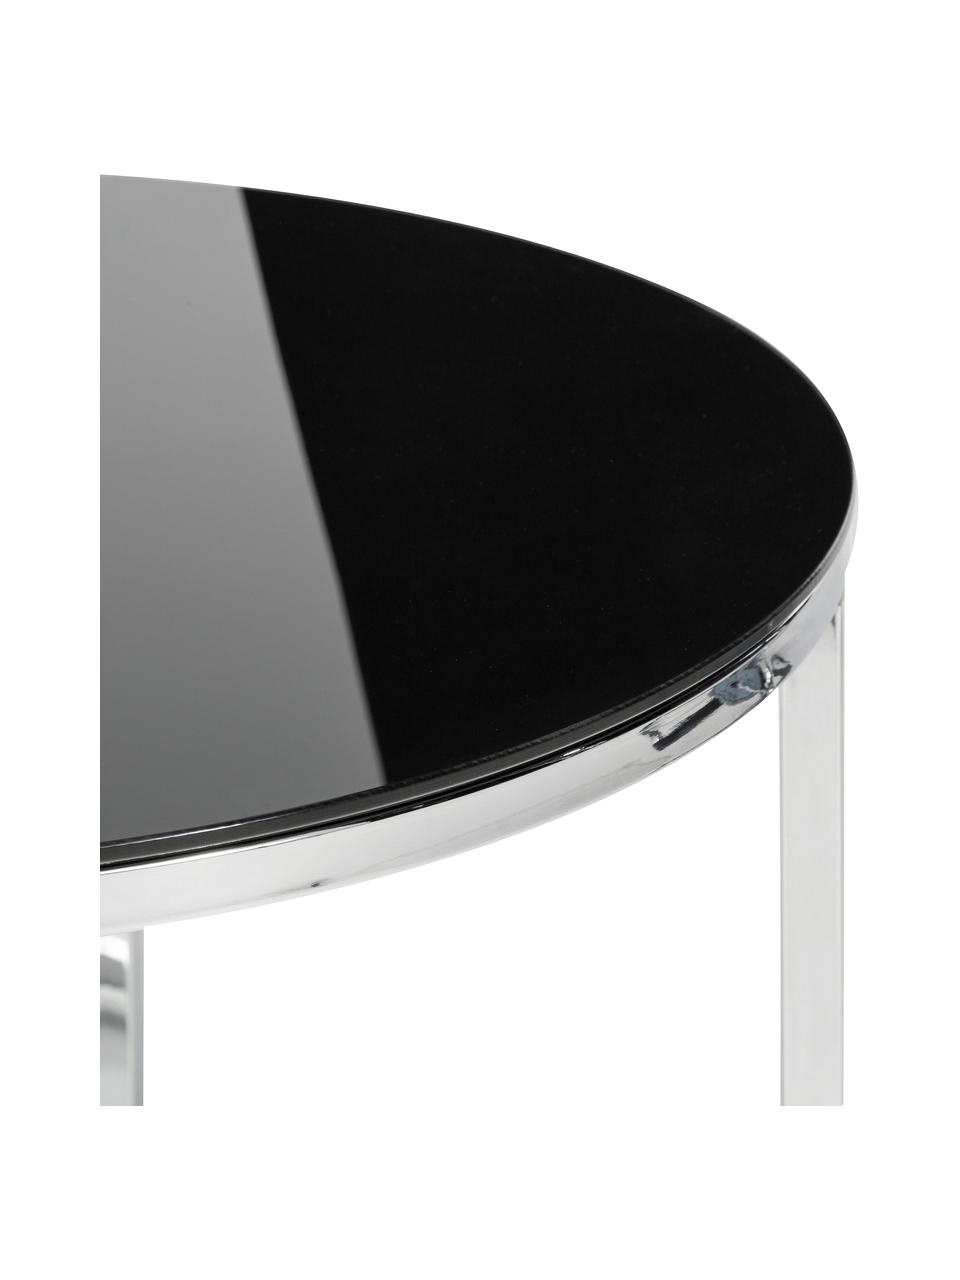 Odkládací stolek se skleněnou deskou Cross, Černá, chromovaný kov, Ø 55 cm, V 45 cm